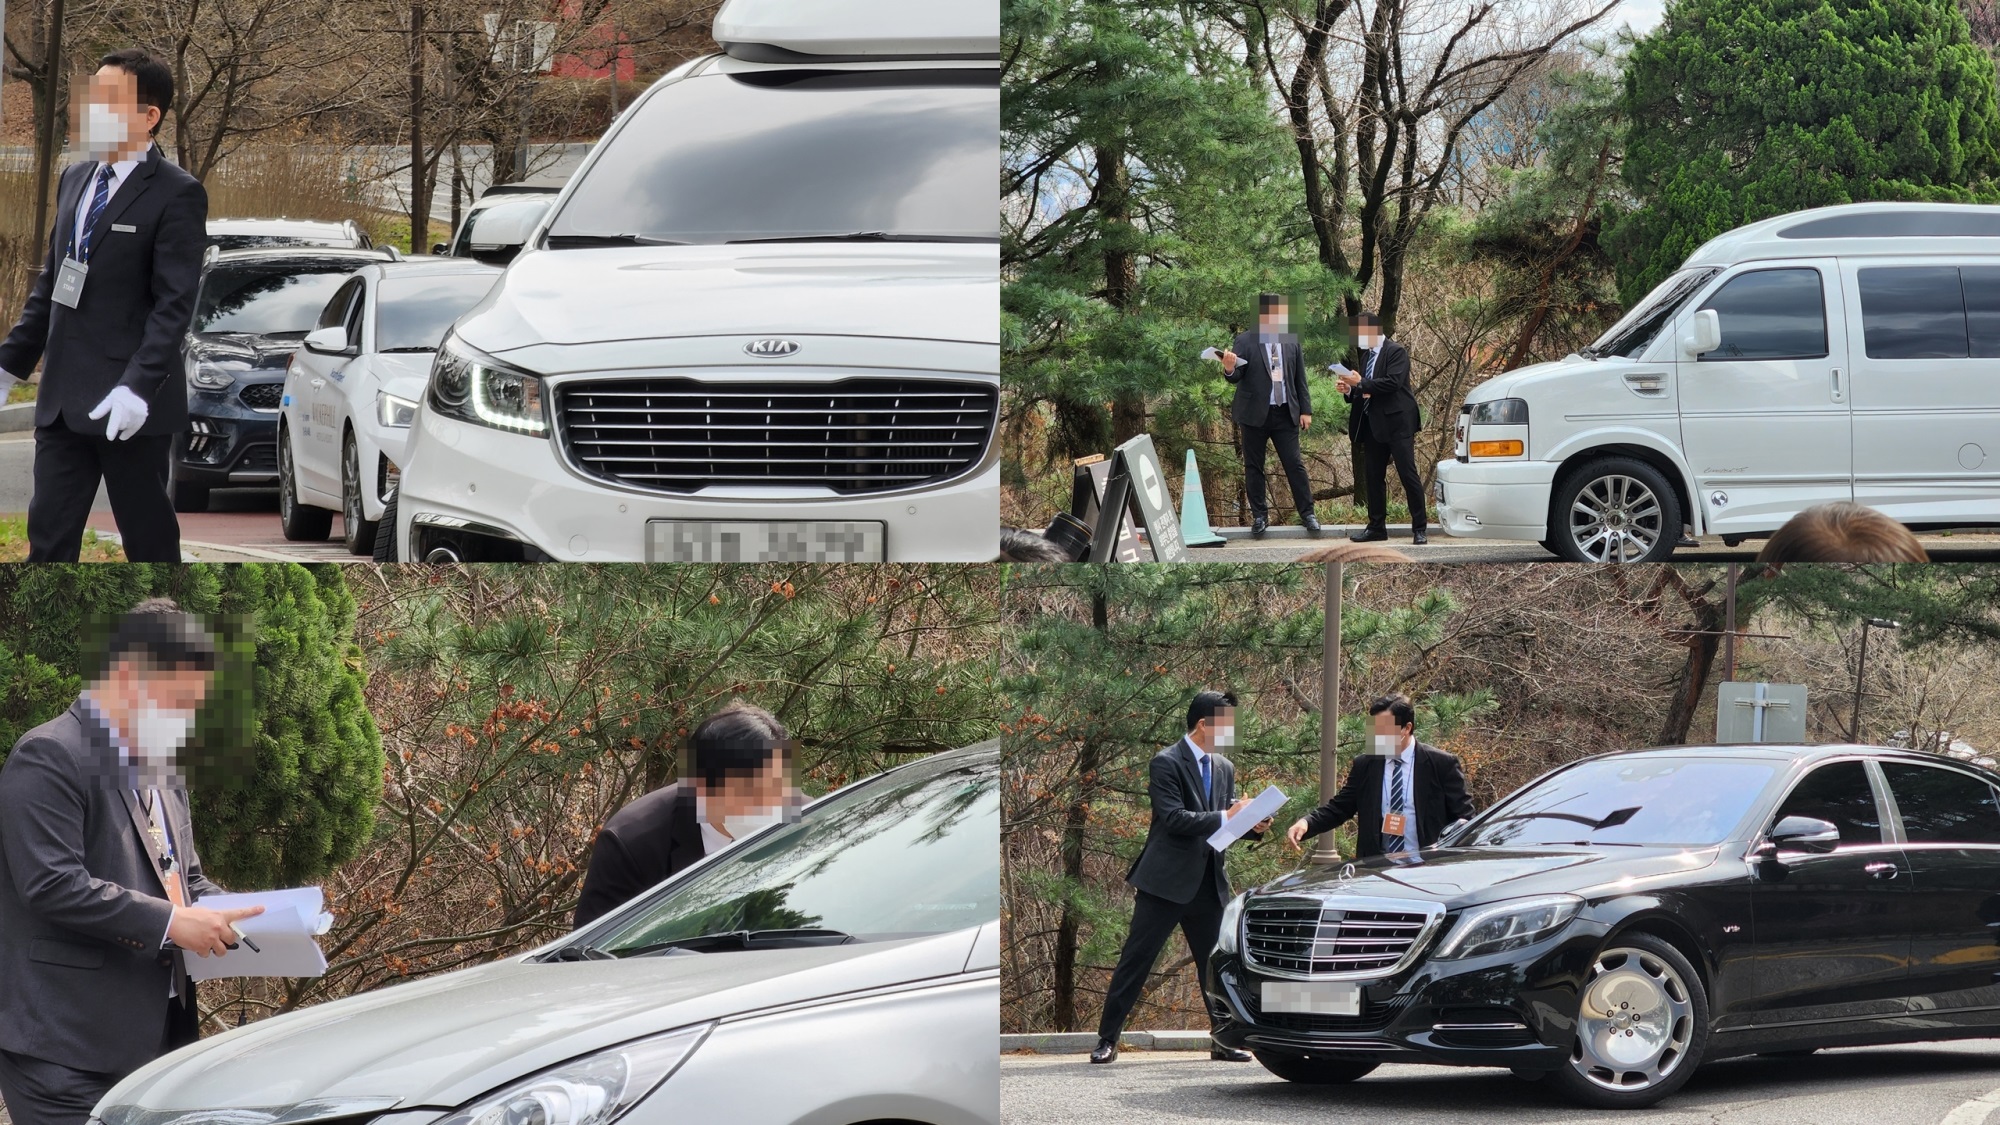 'Đám cưới thế kỷ' của Huyn Bin và Son Ye Jin tổ chức riêng tư, hình ảnh 'tuyệt mật' nhưng vẫn đông nghịt khách, bãi đậu xe chật kín chỗ - Ảnh 1